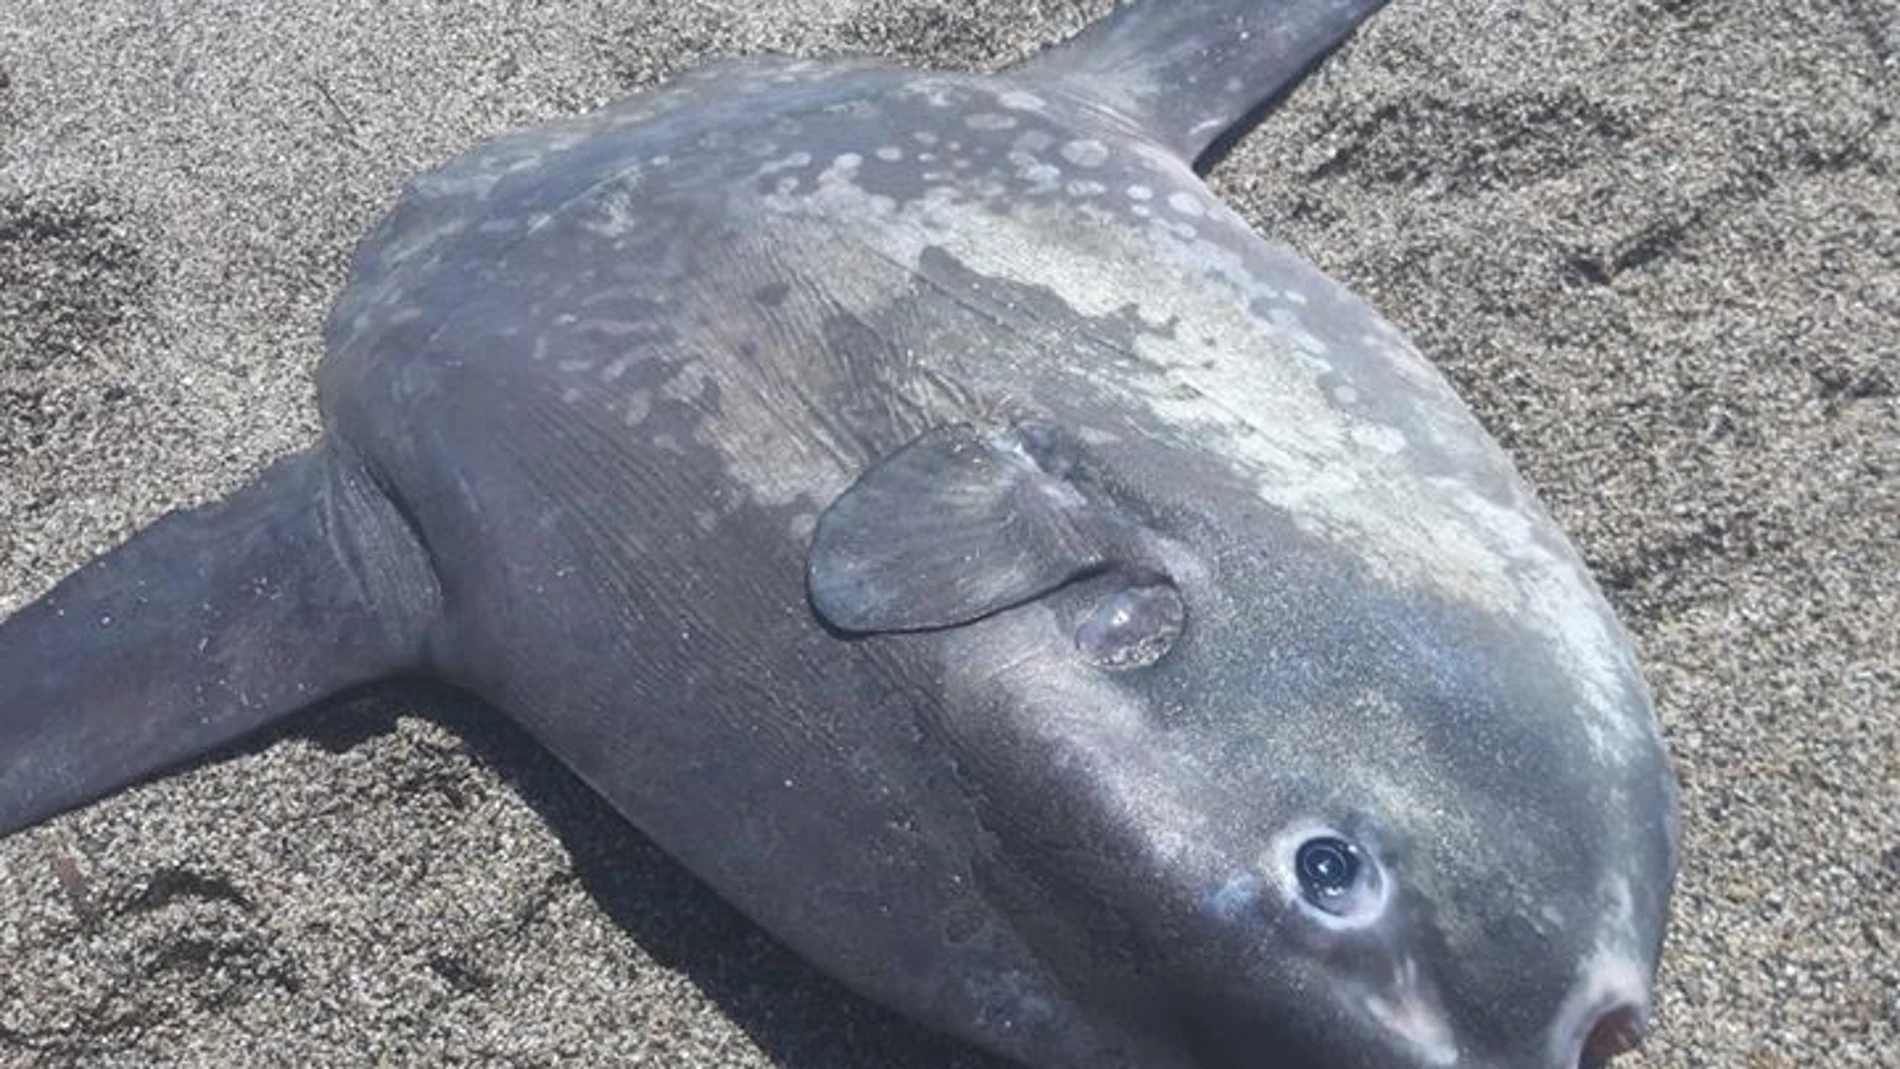 Almería.-Equinac anuncia acciones legales contra un hombre por "causar la muerte a un pez luna" en una playa de Roquetas